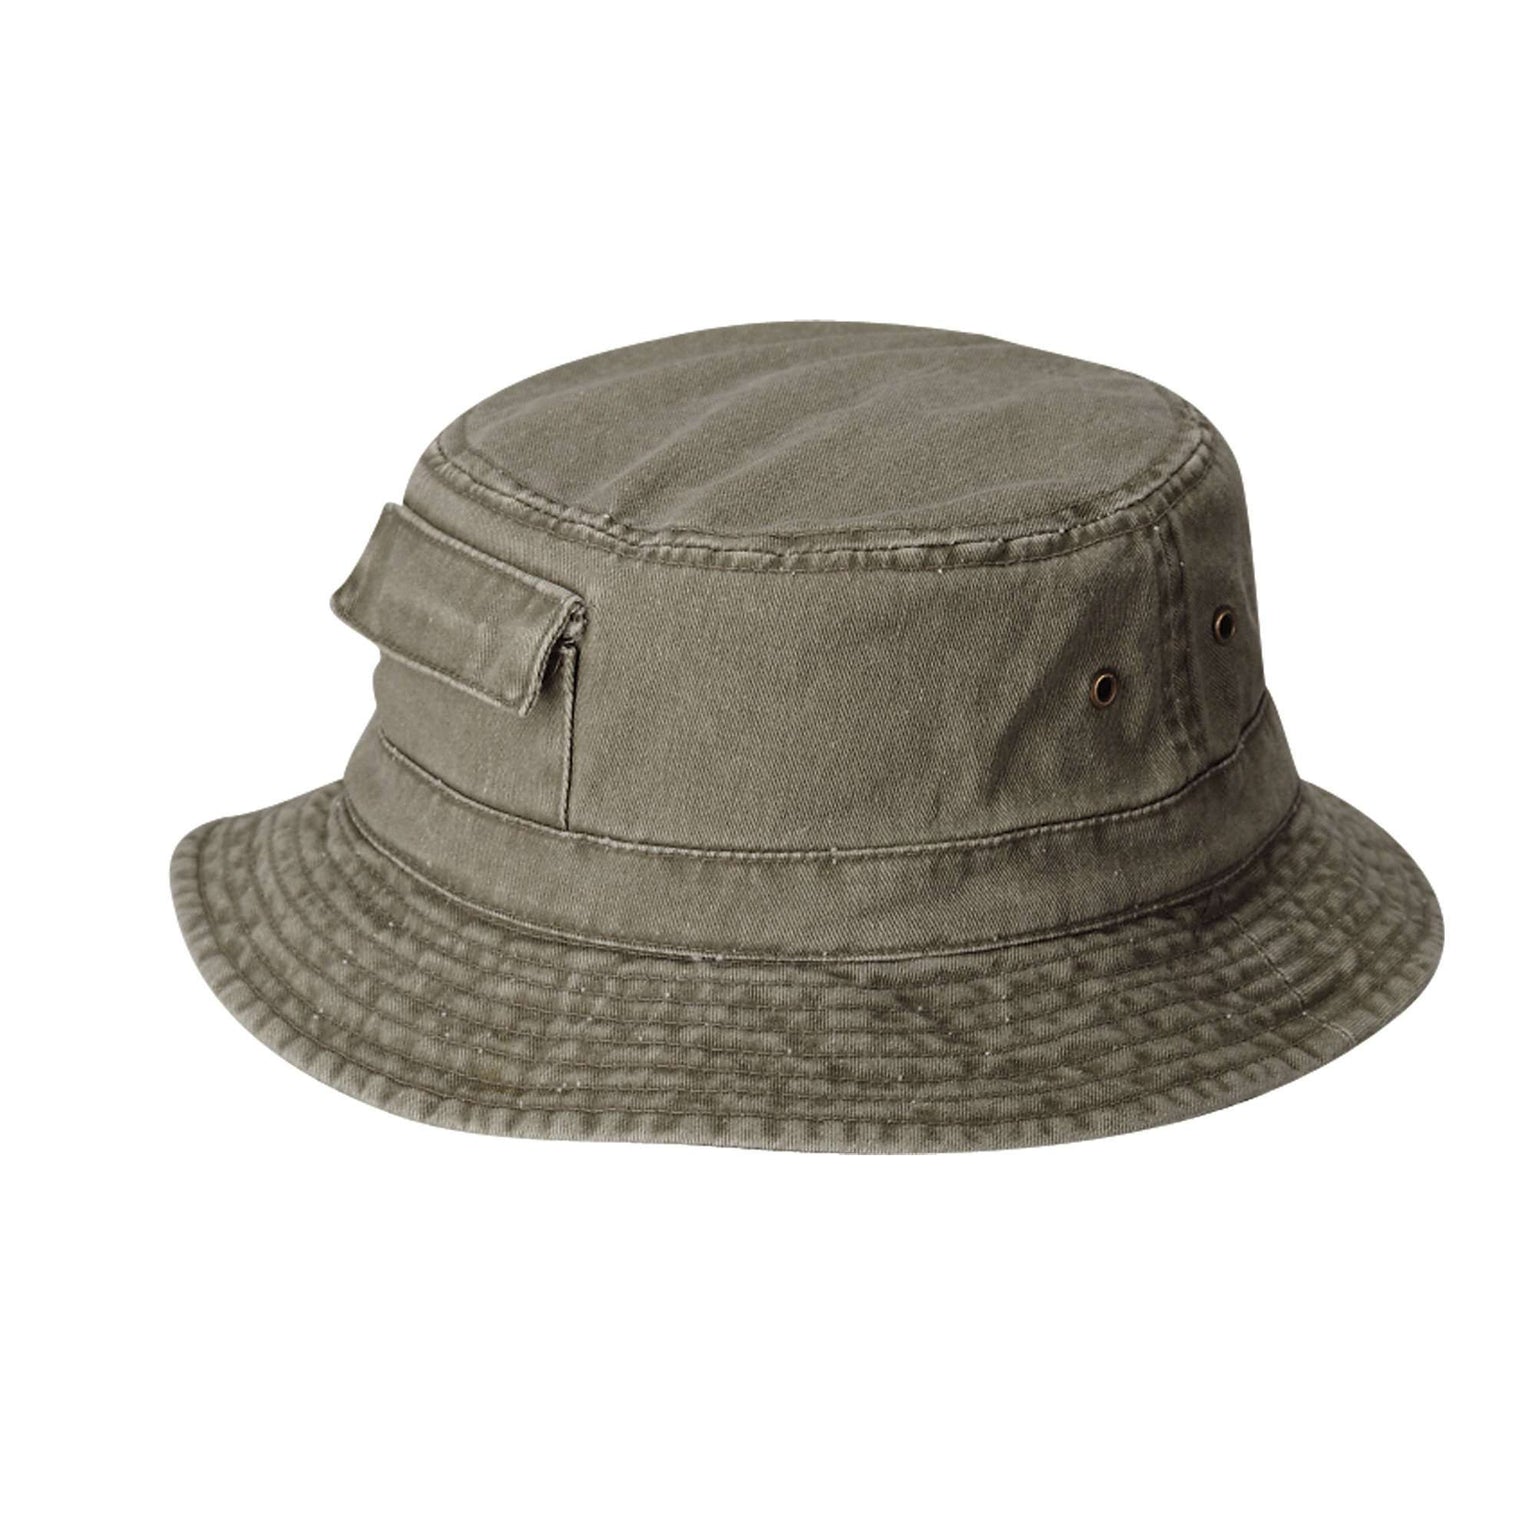 Dorfman Pacific Hats - DPC Outdoor Design Hats, DPC Visors, DPC Caps ...